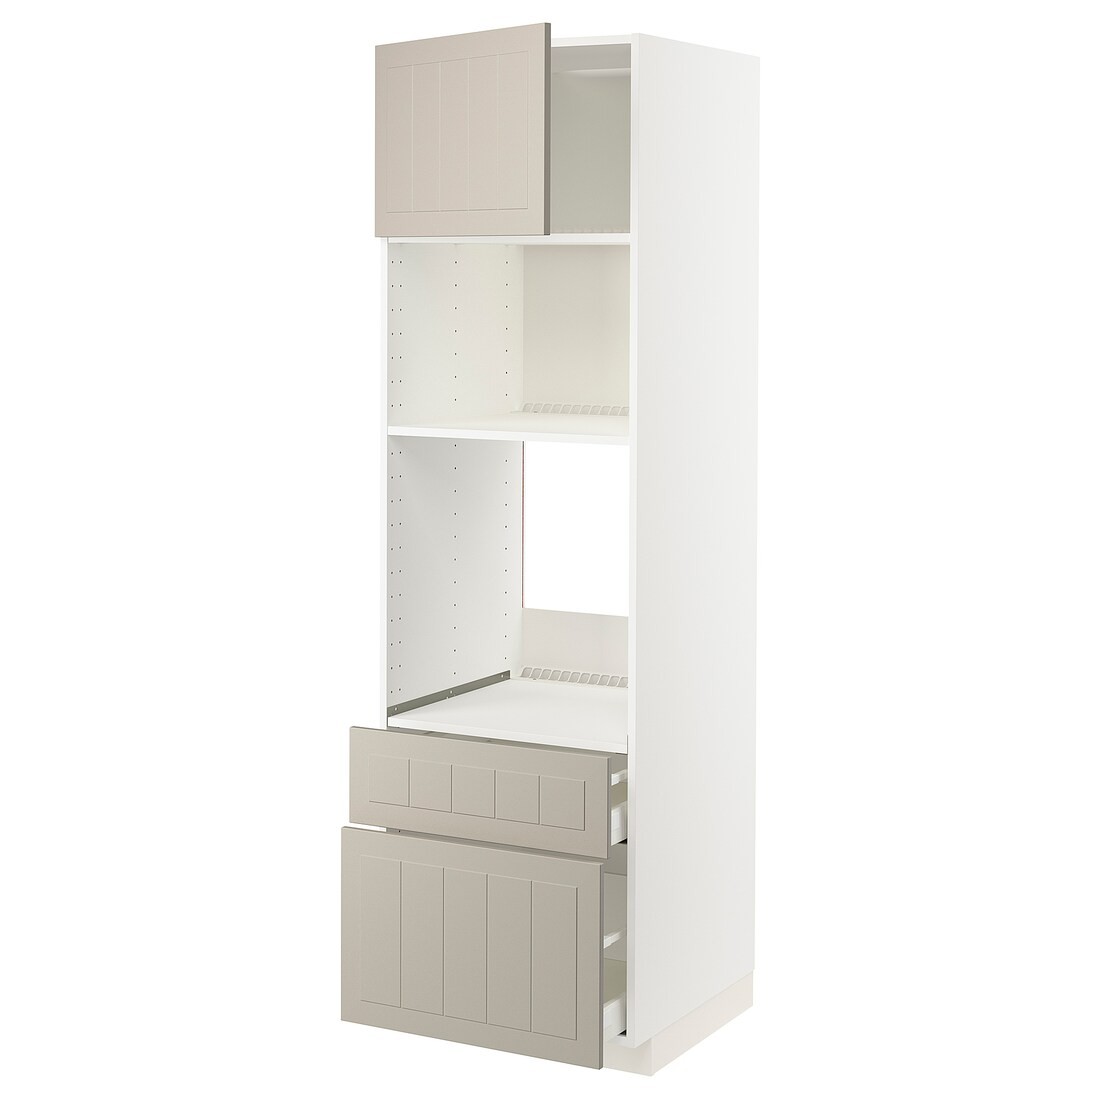 IKEA METOD МЕТОД / MAXIMERA МАКСИМЕРА Высокий шкаф для духовки / микроволновки с дверями / 2 ящиками, белый / Stensund бежевый, 60x60x200 см 99466740 | 994.667.40